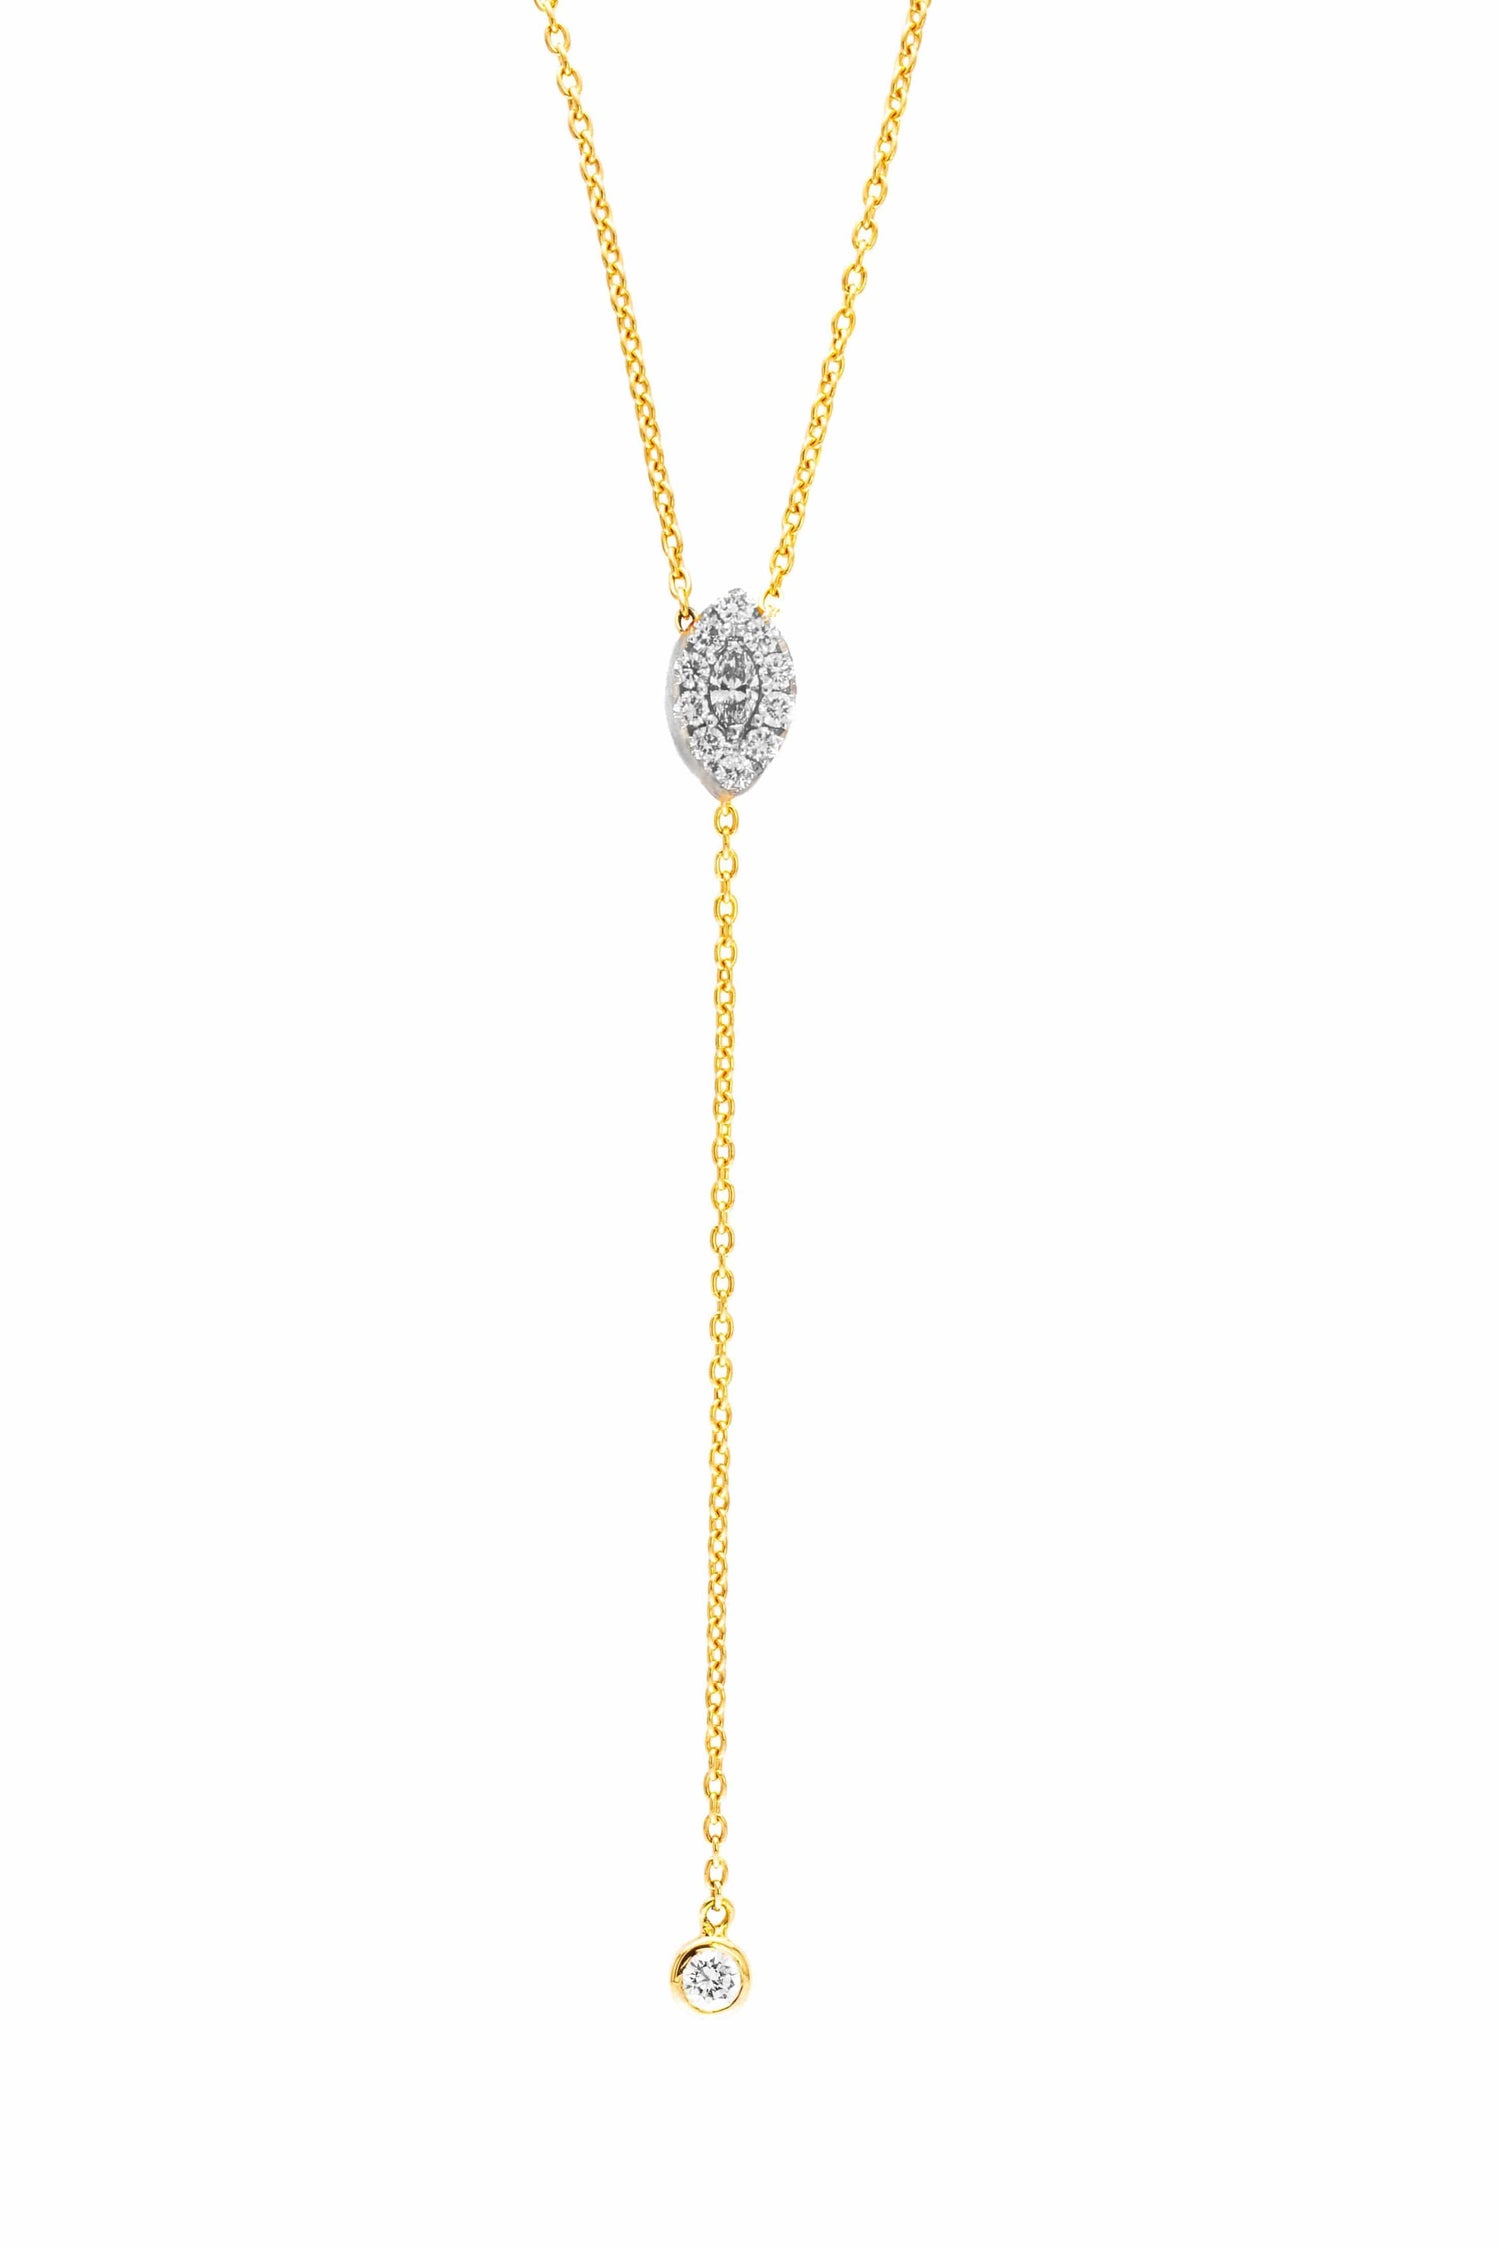 Alessa Jewelry \ Necklaces